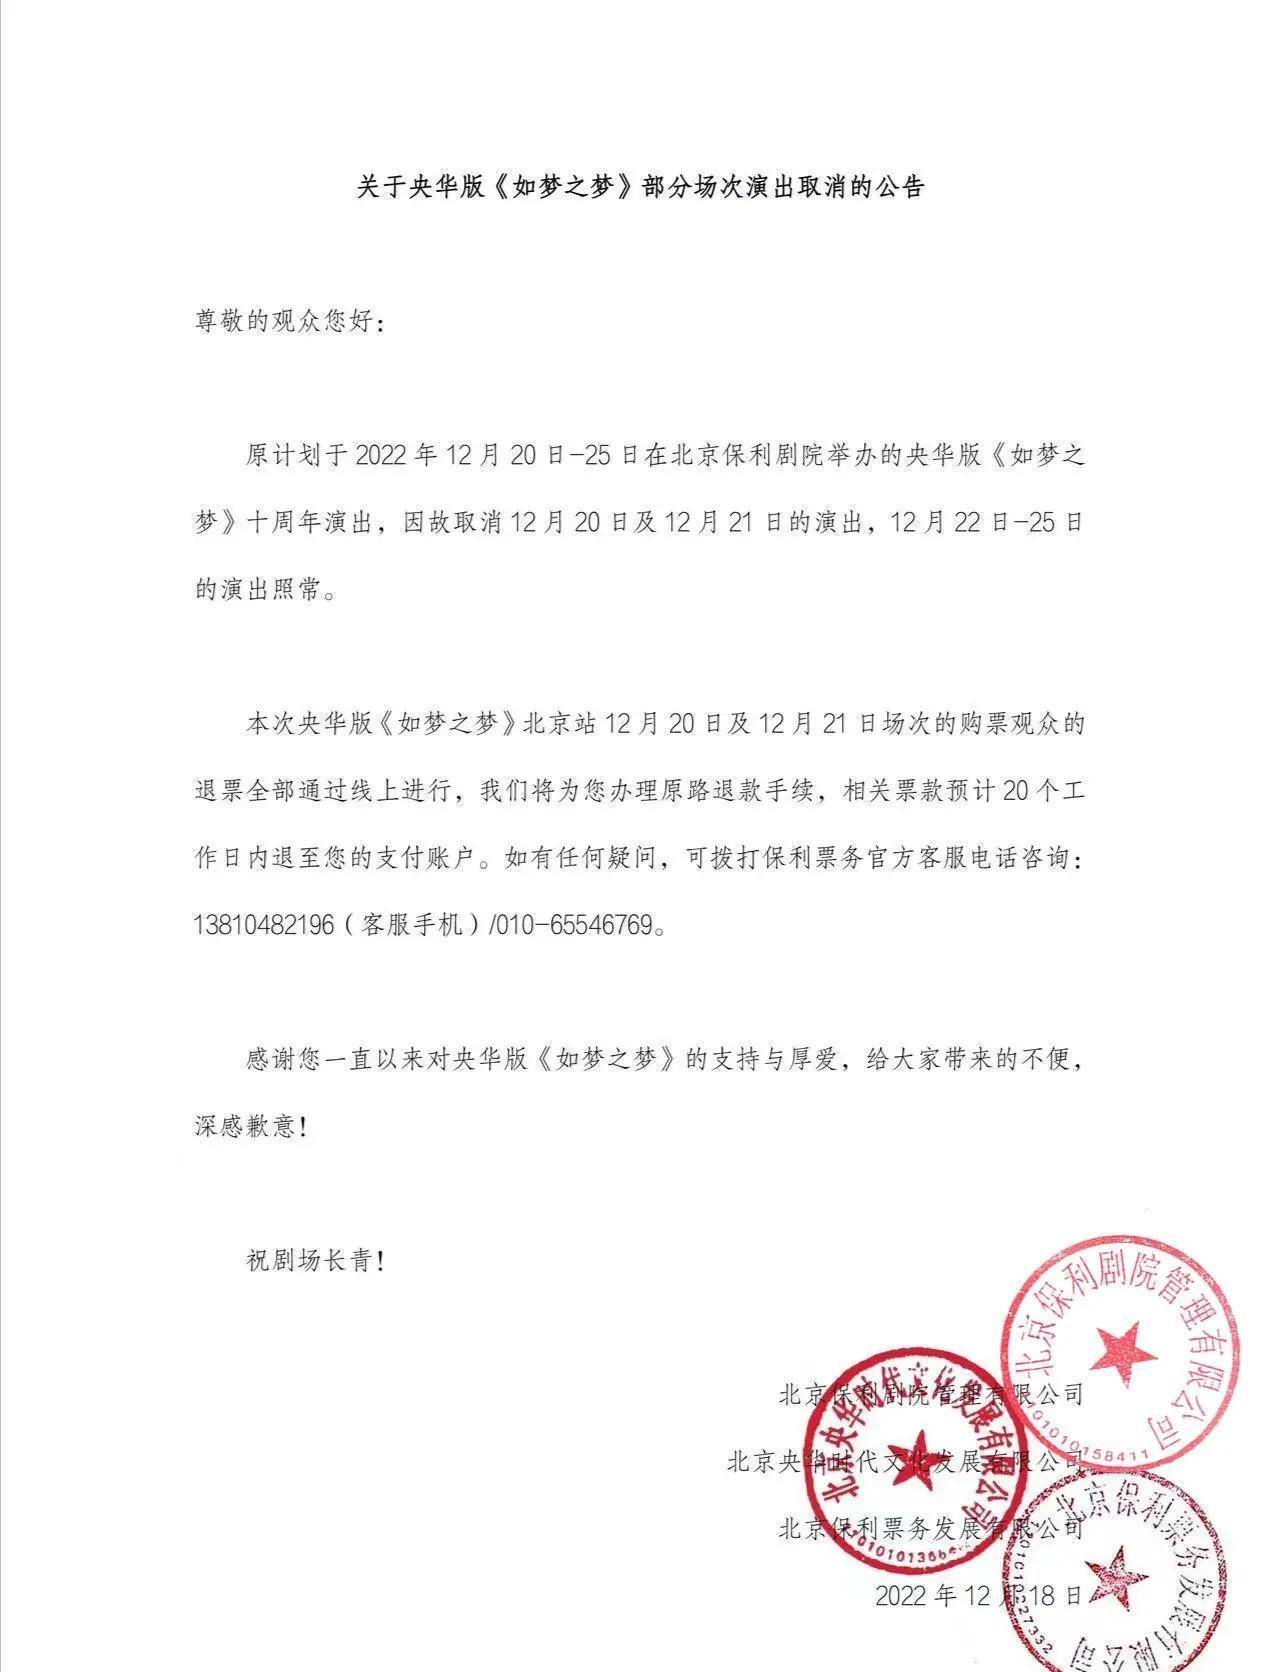 肖战《如梦之梦》北京站20、21号演出取消，昨天已飞到北京